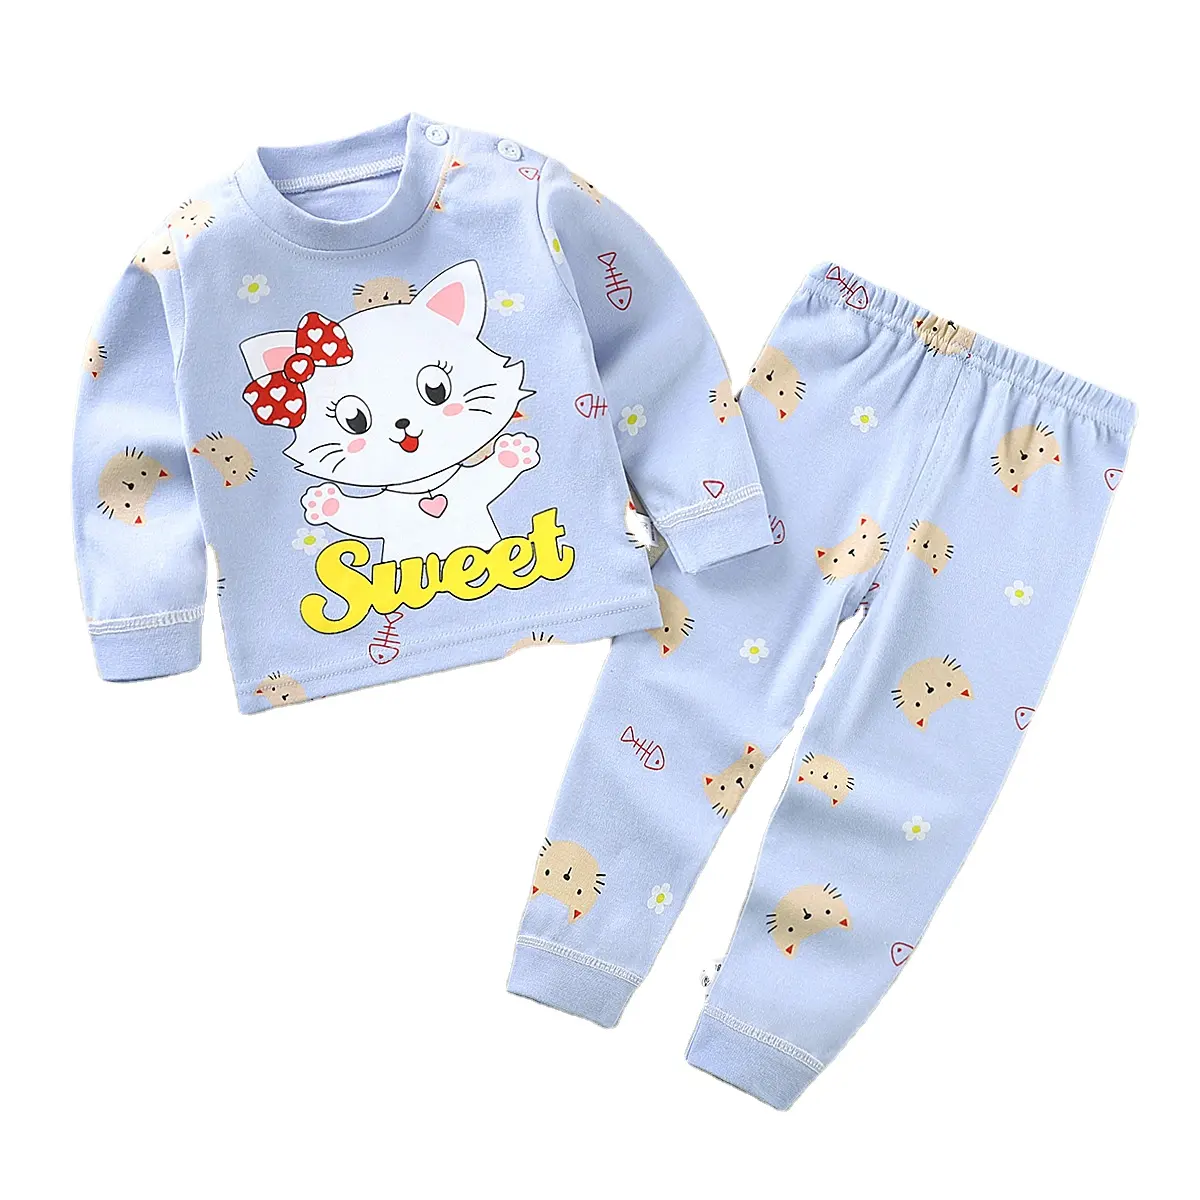 Wholesale Kids Pijamas Children Sleepwear cotton Pajamas Sets Kids Girl's Clothing Set